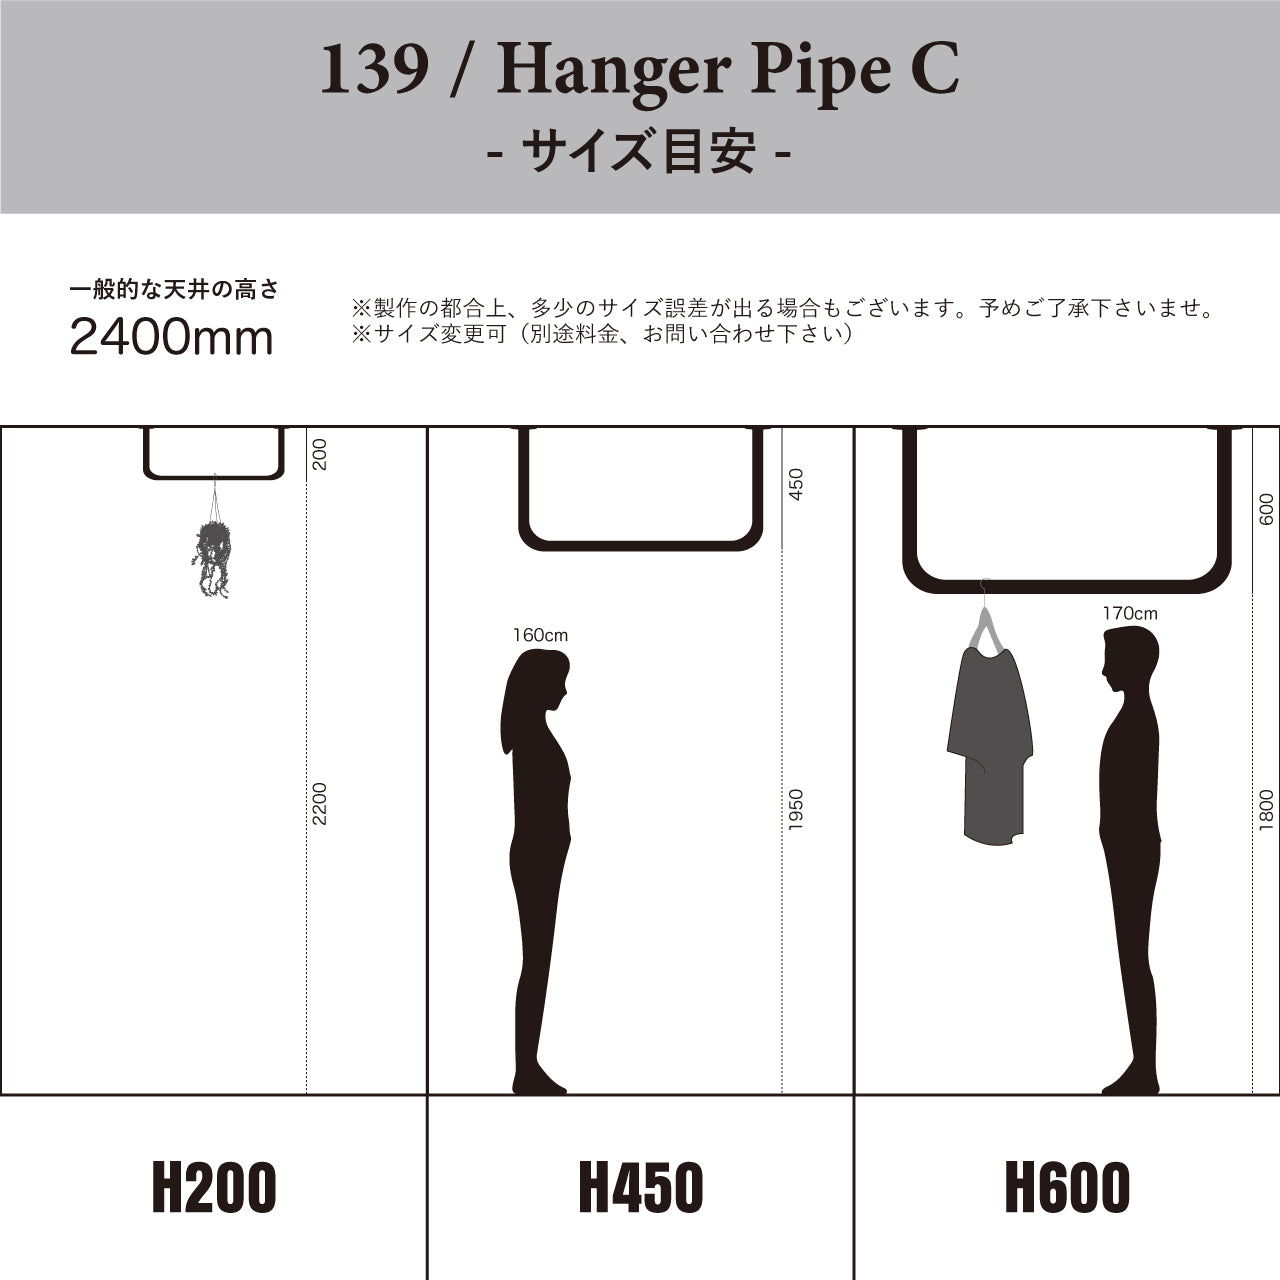 Hanger Pipe C